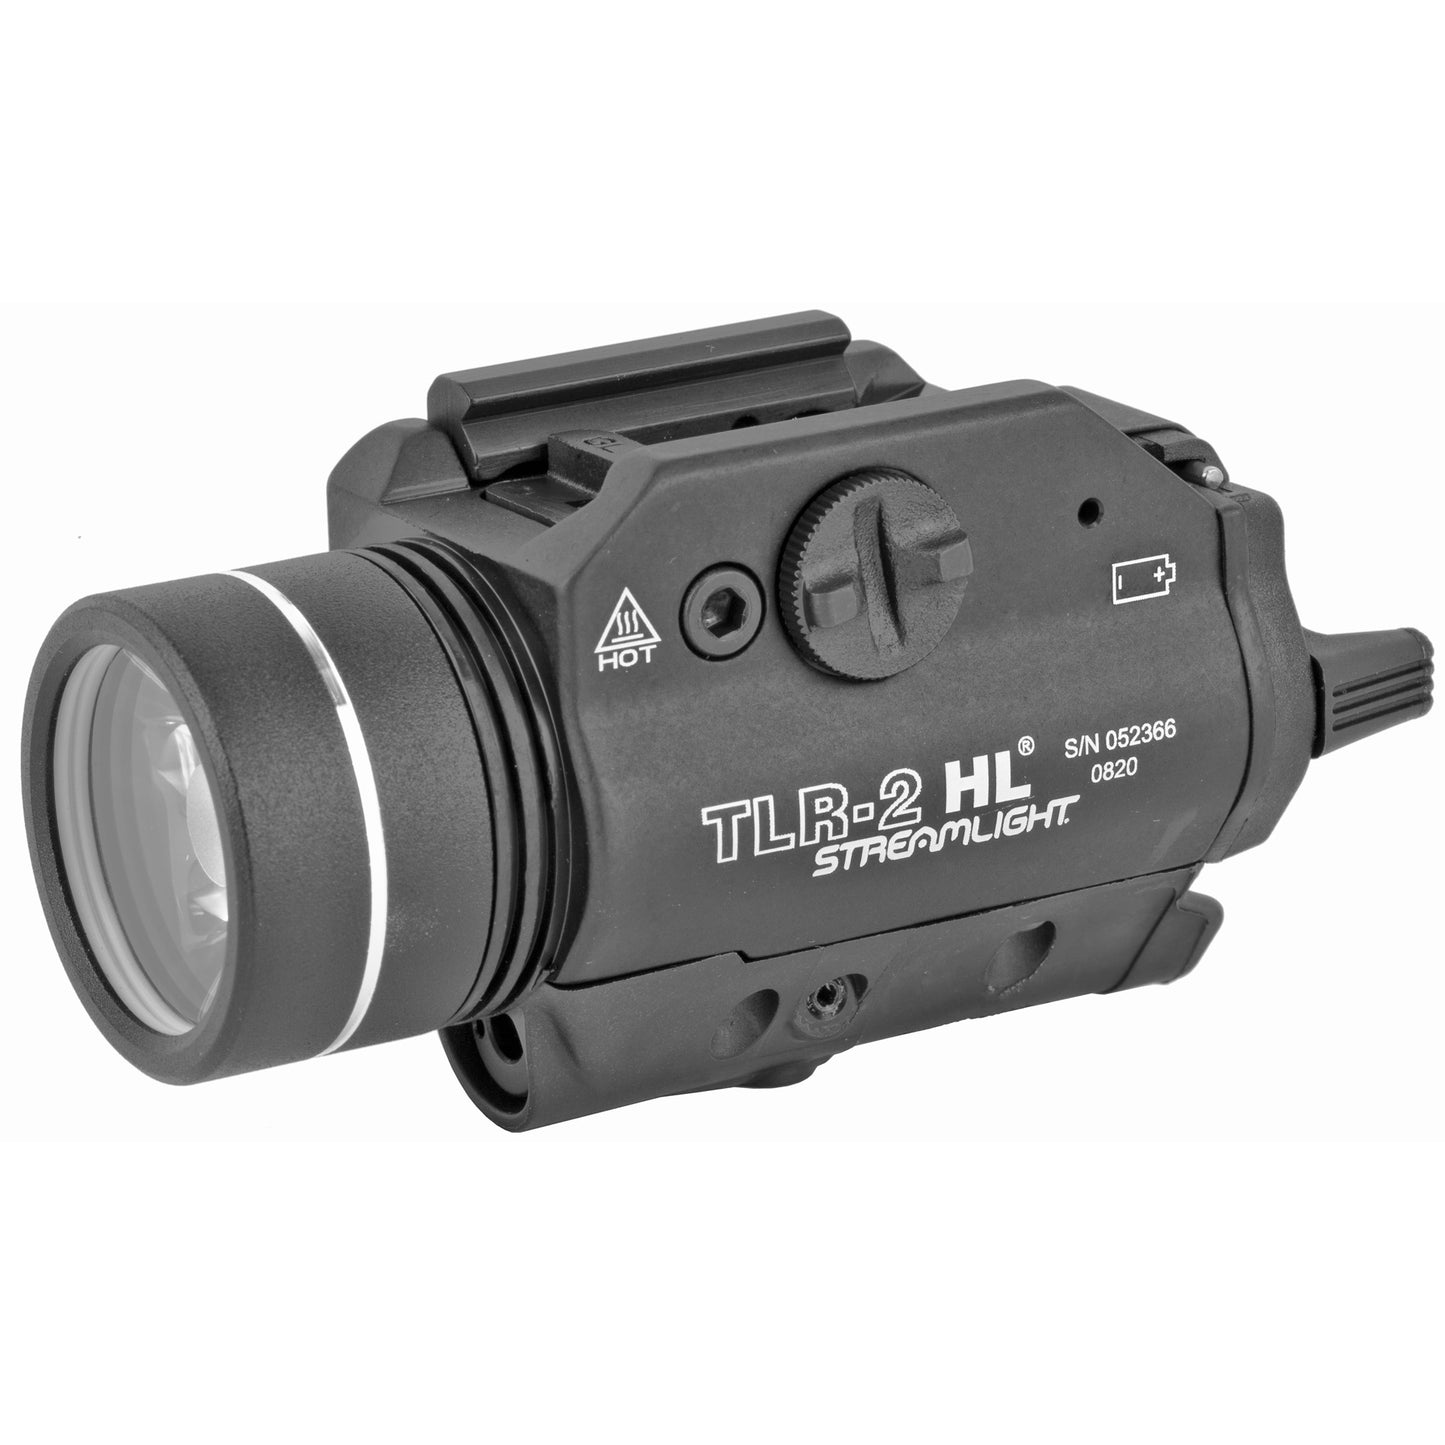 Streamlight, TLR-2 HL, Tac Light, With Laser, C4 LED, 1000 Lumens, Strobe, Red Laser, Laser Sight, Black